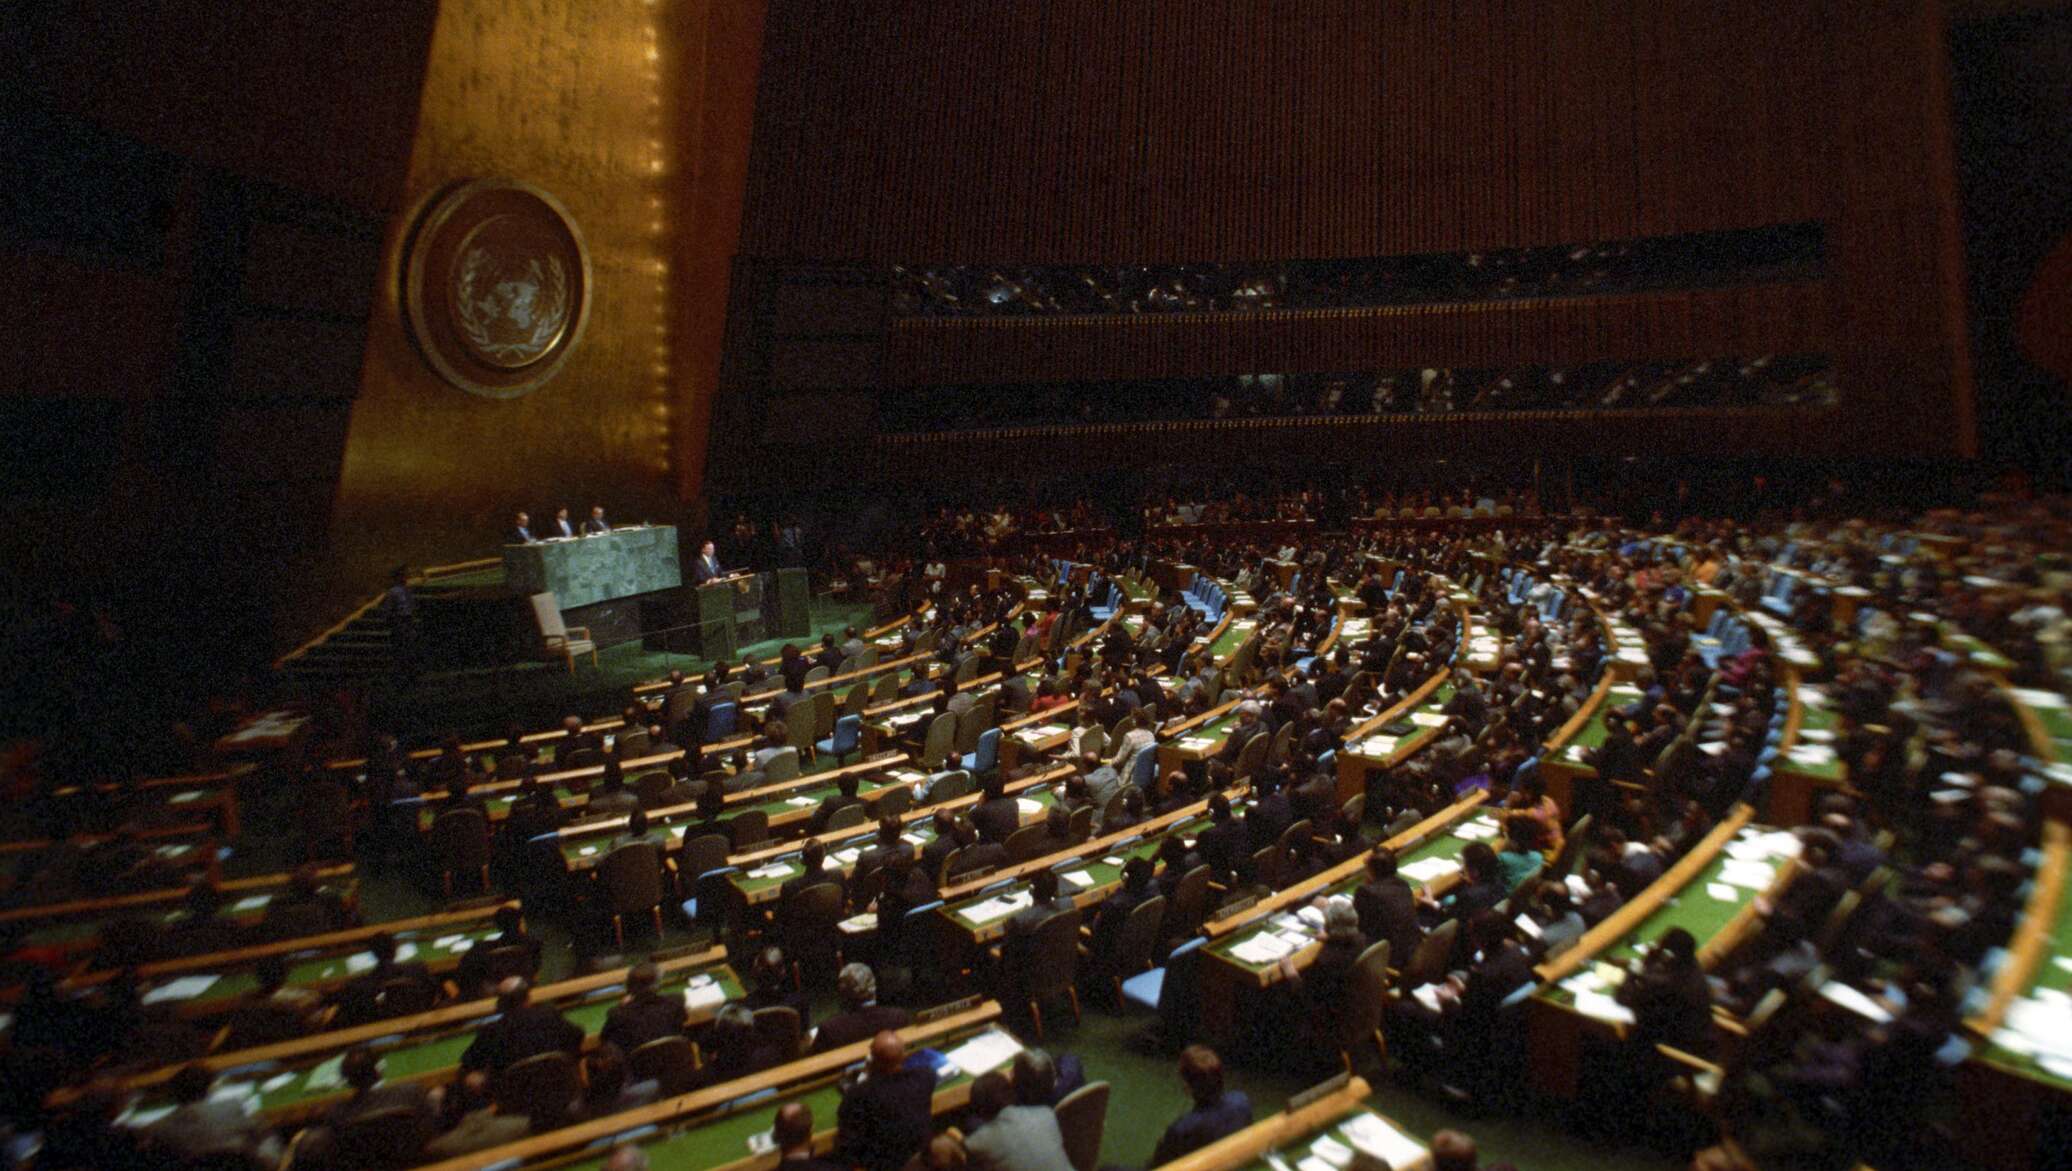 Оон 1985. Генеральная Ассамблея ООН 1995. Генеральная Ассамблея ООН 1959. Генеральная Ассамблея ООН 1974. Заседание ООН 1992.